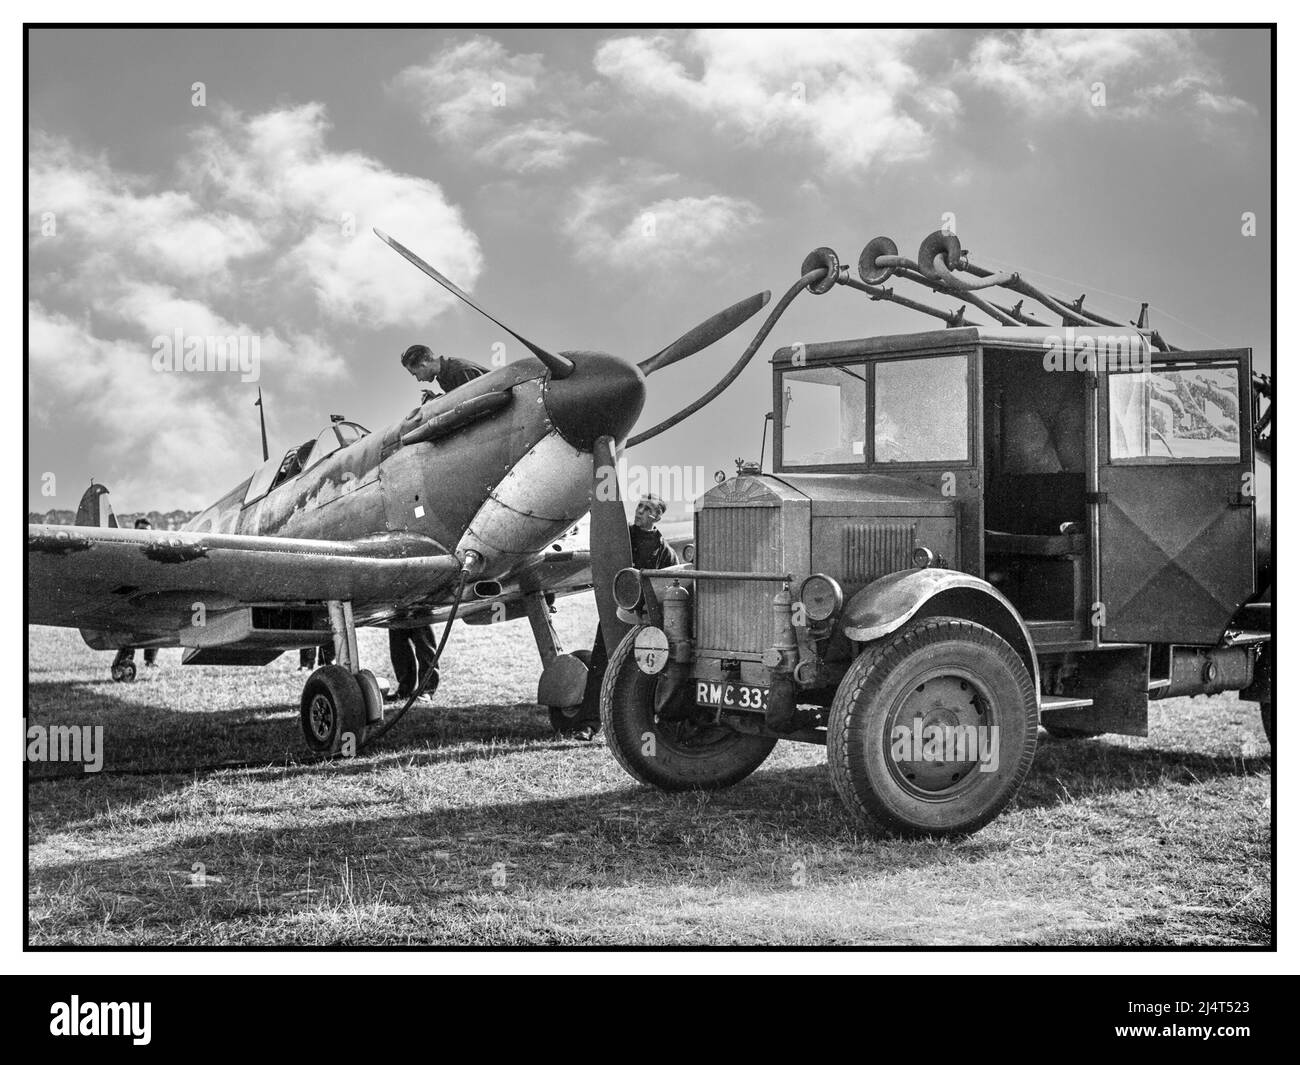 SPITFIRE WW2 Battle of Britain Eine Spitfire der Staffel 19 wird in Fowlmere, in der Nähe von Duxford, im September 1940, betankt. Betanken einer Spitfire von Squadron Nr. 19 in Fowlmere während der Schlacht von Großbritannien, September 1940. Stockfoto